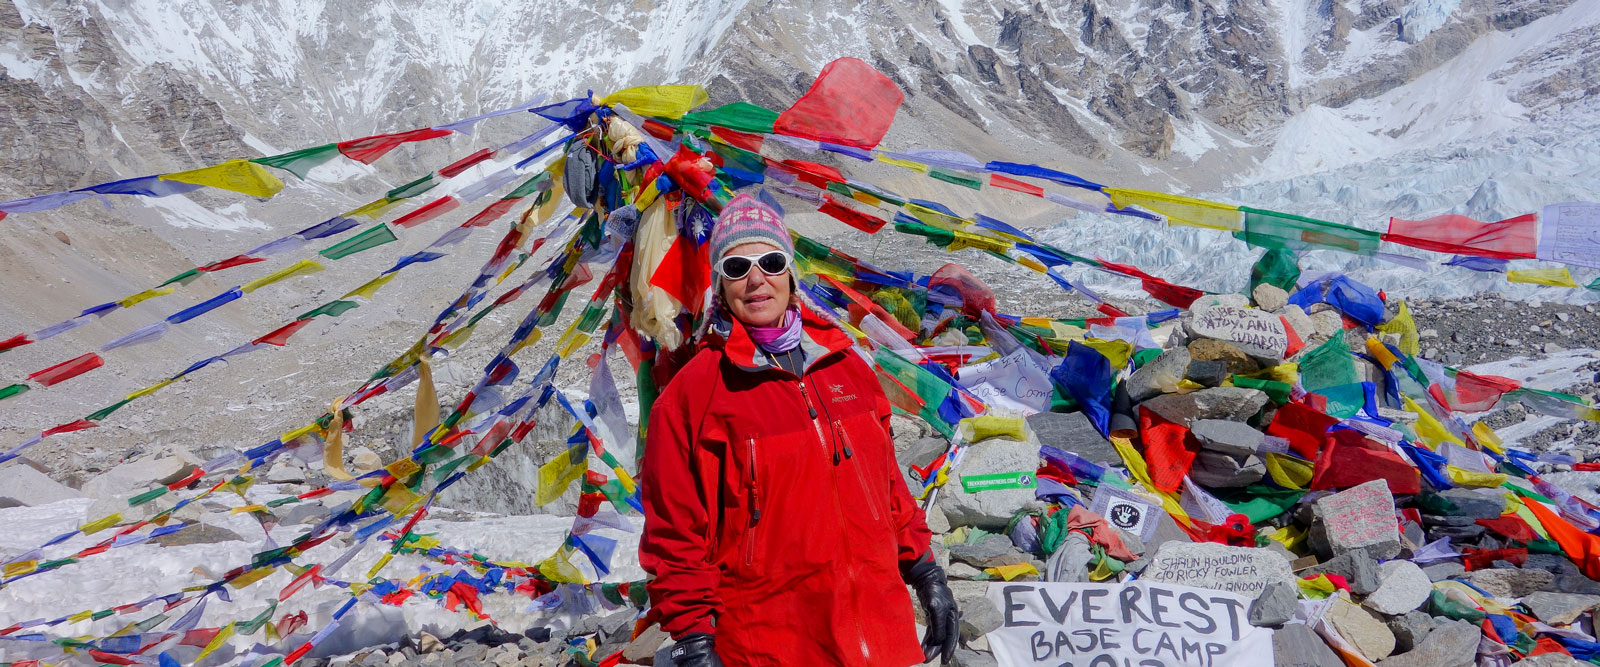 Christi-Wharton-Everest-Base-Camp-testimonial